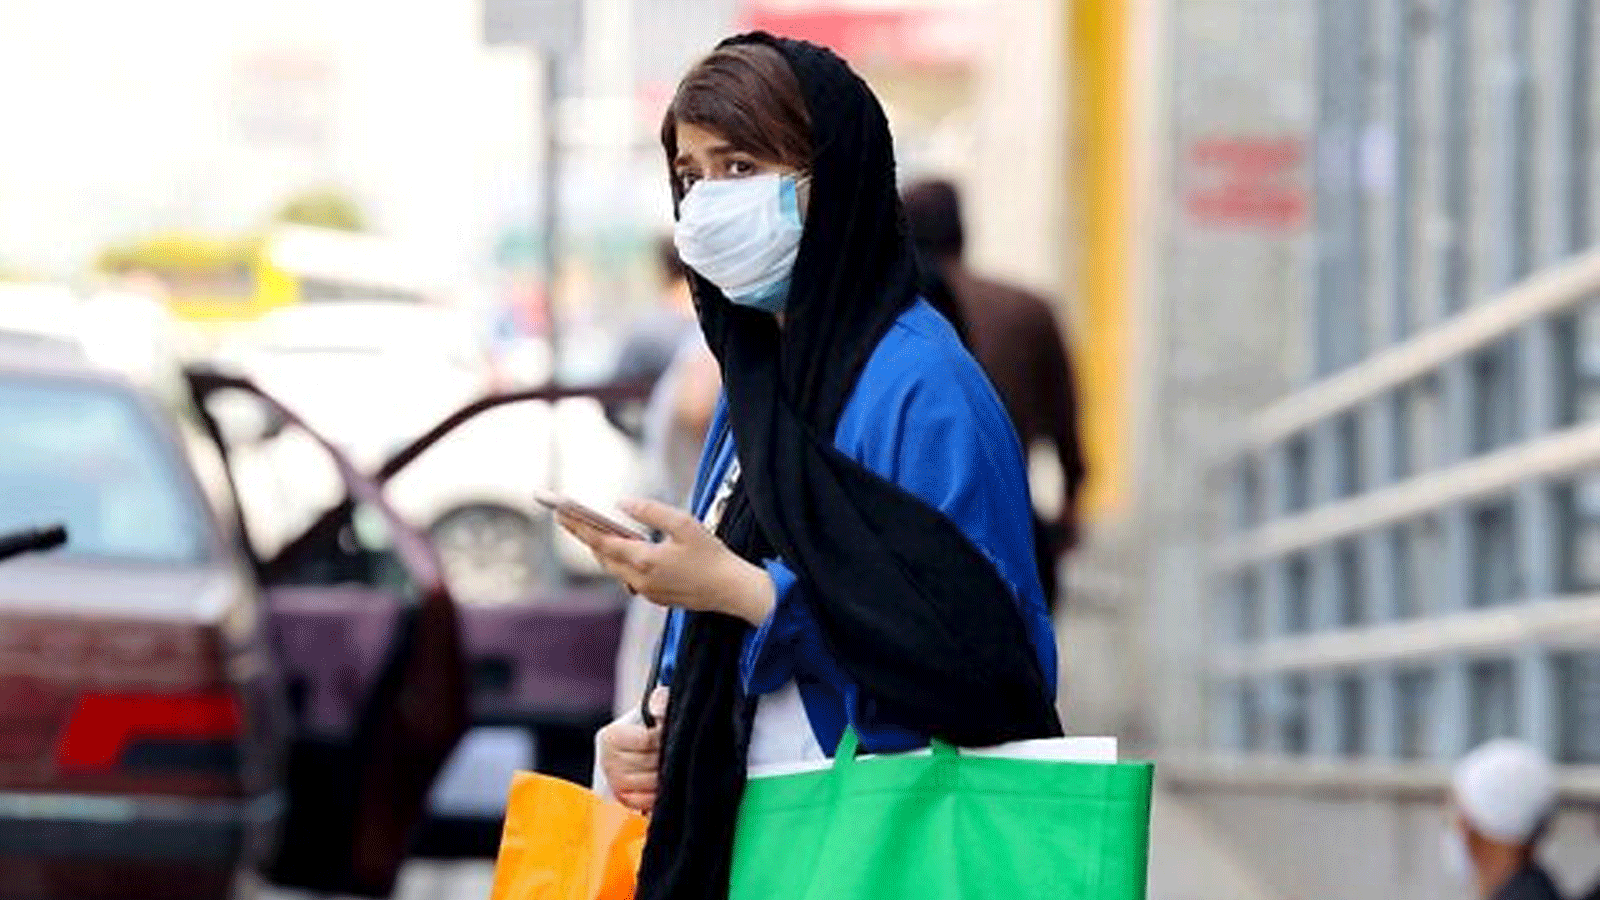 امرأة إيرانية ترتدي قناع الوجه في انتظار عبور أحد شوارع العاصمة طهران، في 3 تموز/ يوليو 2021